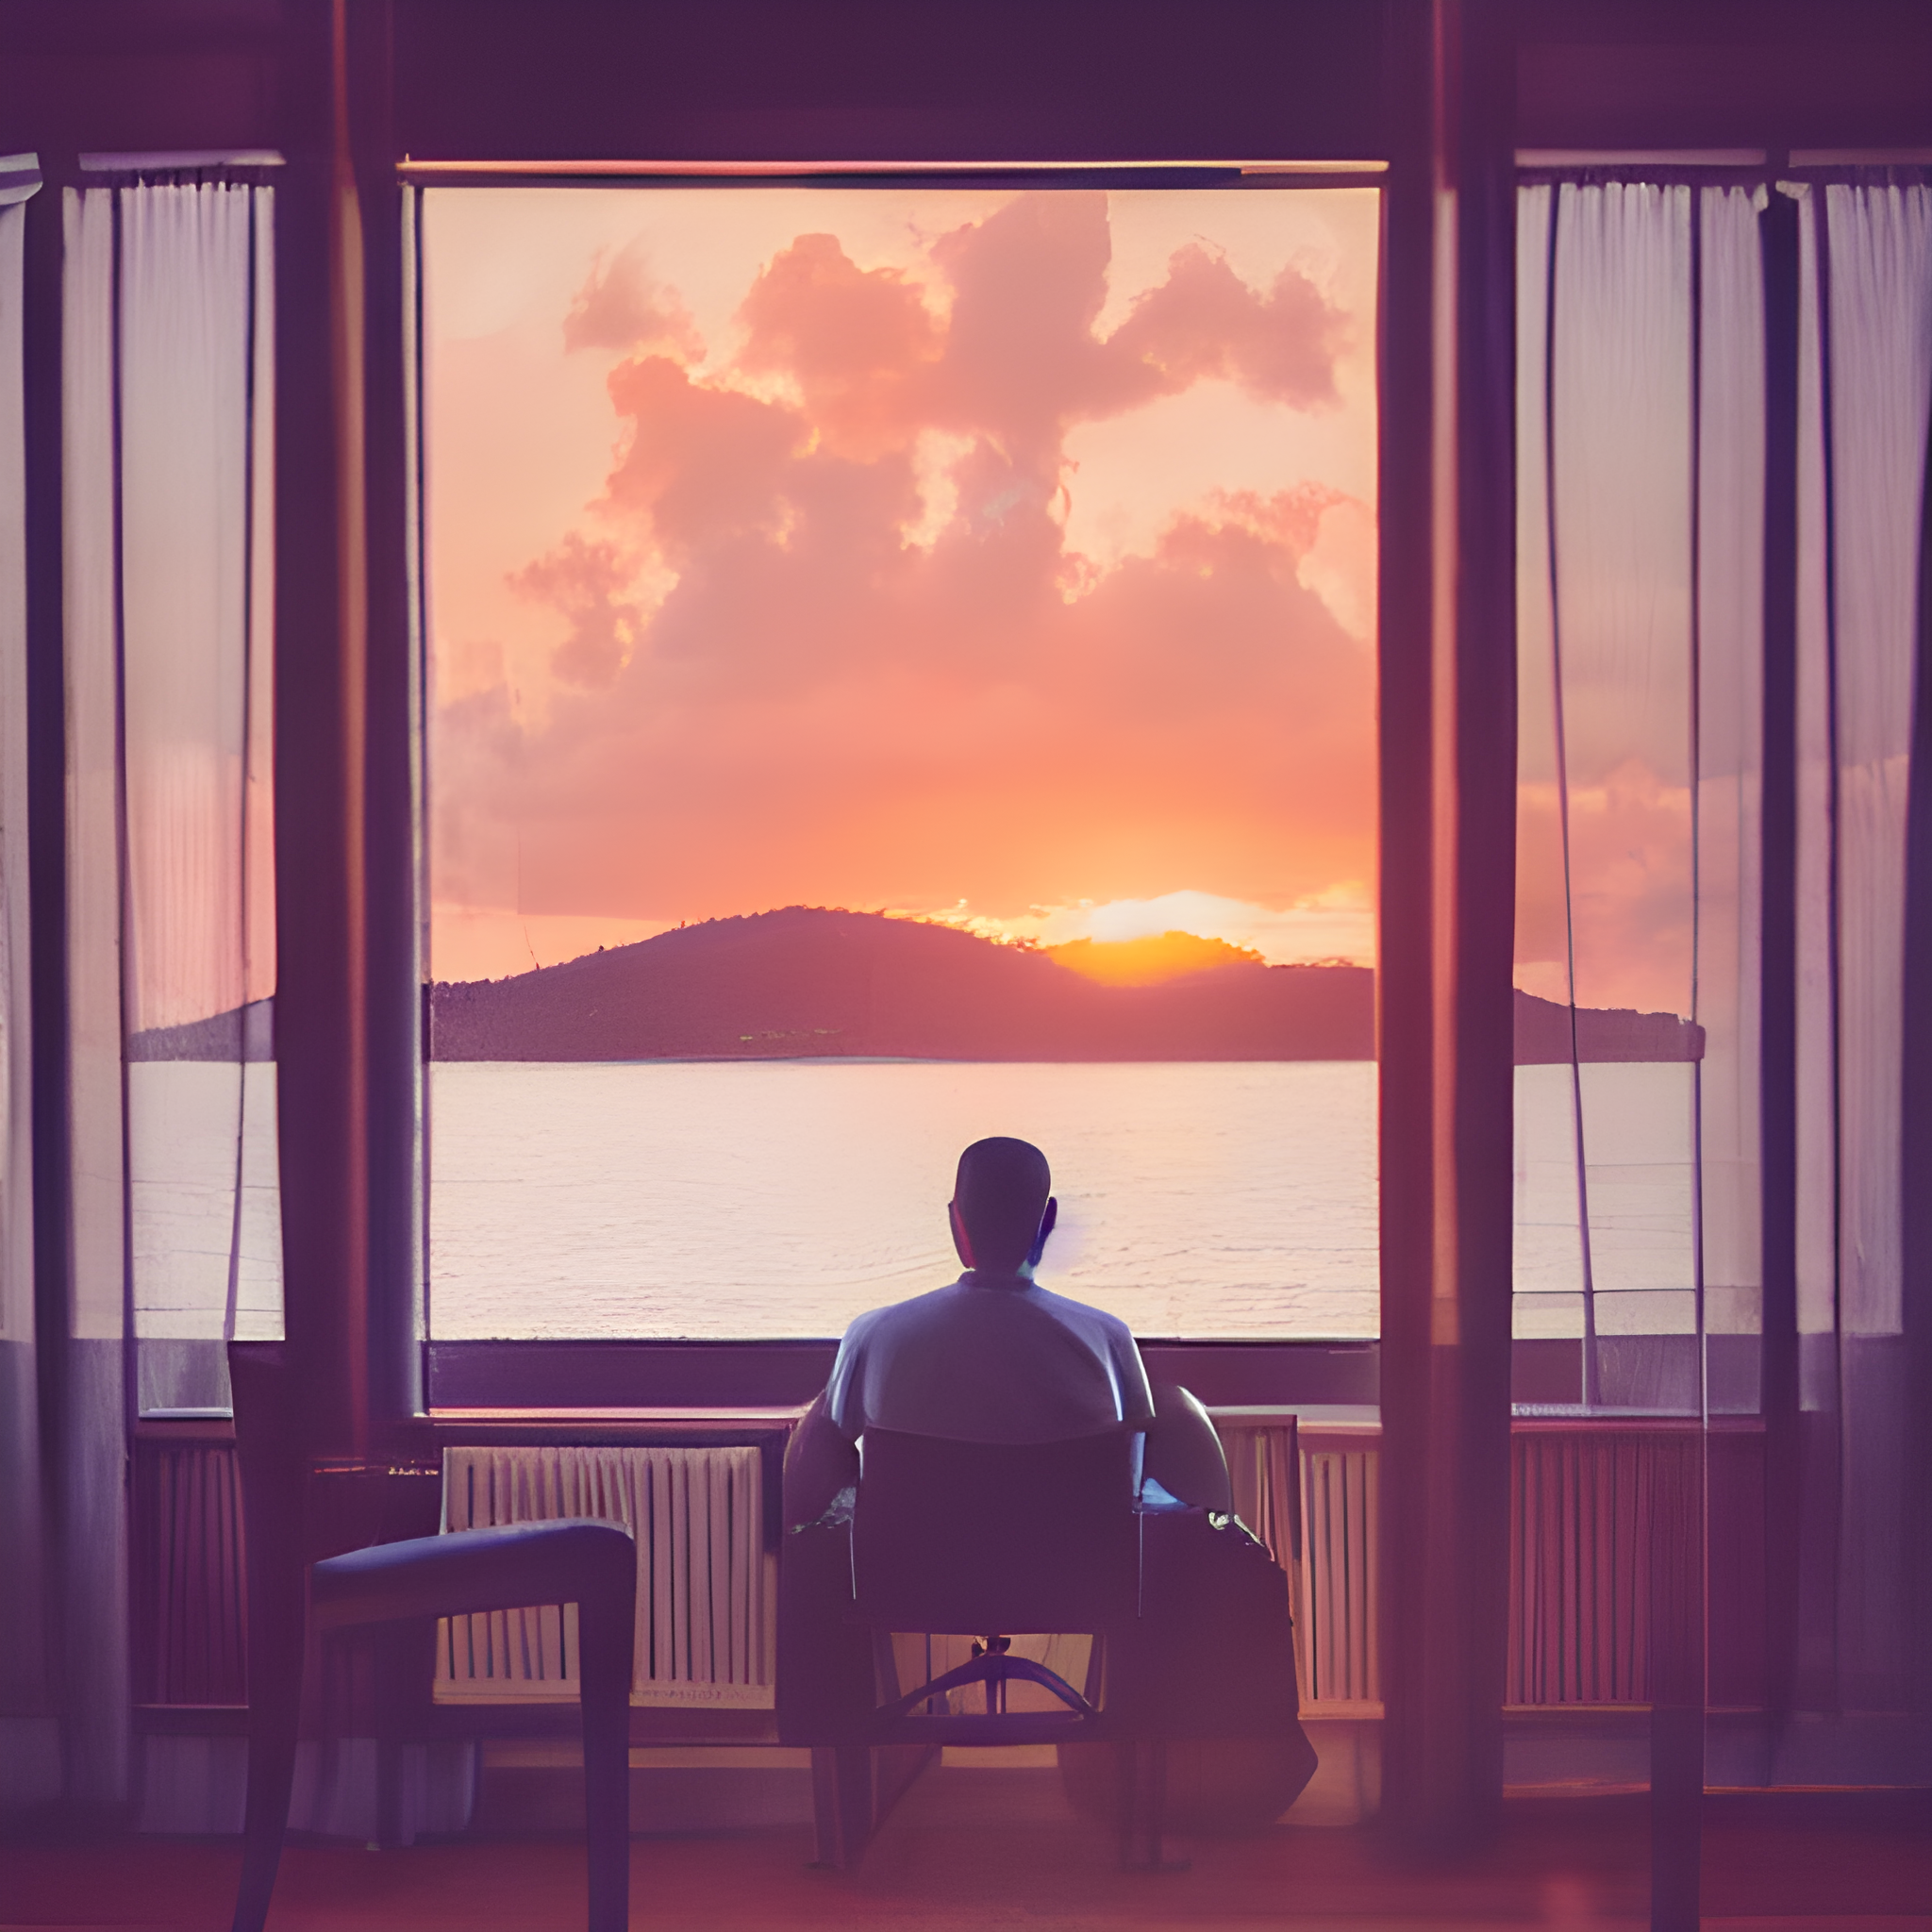 窓の外の夕日と雲を椅子に座って眺めている男性を描いたAIアート